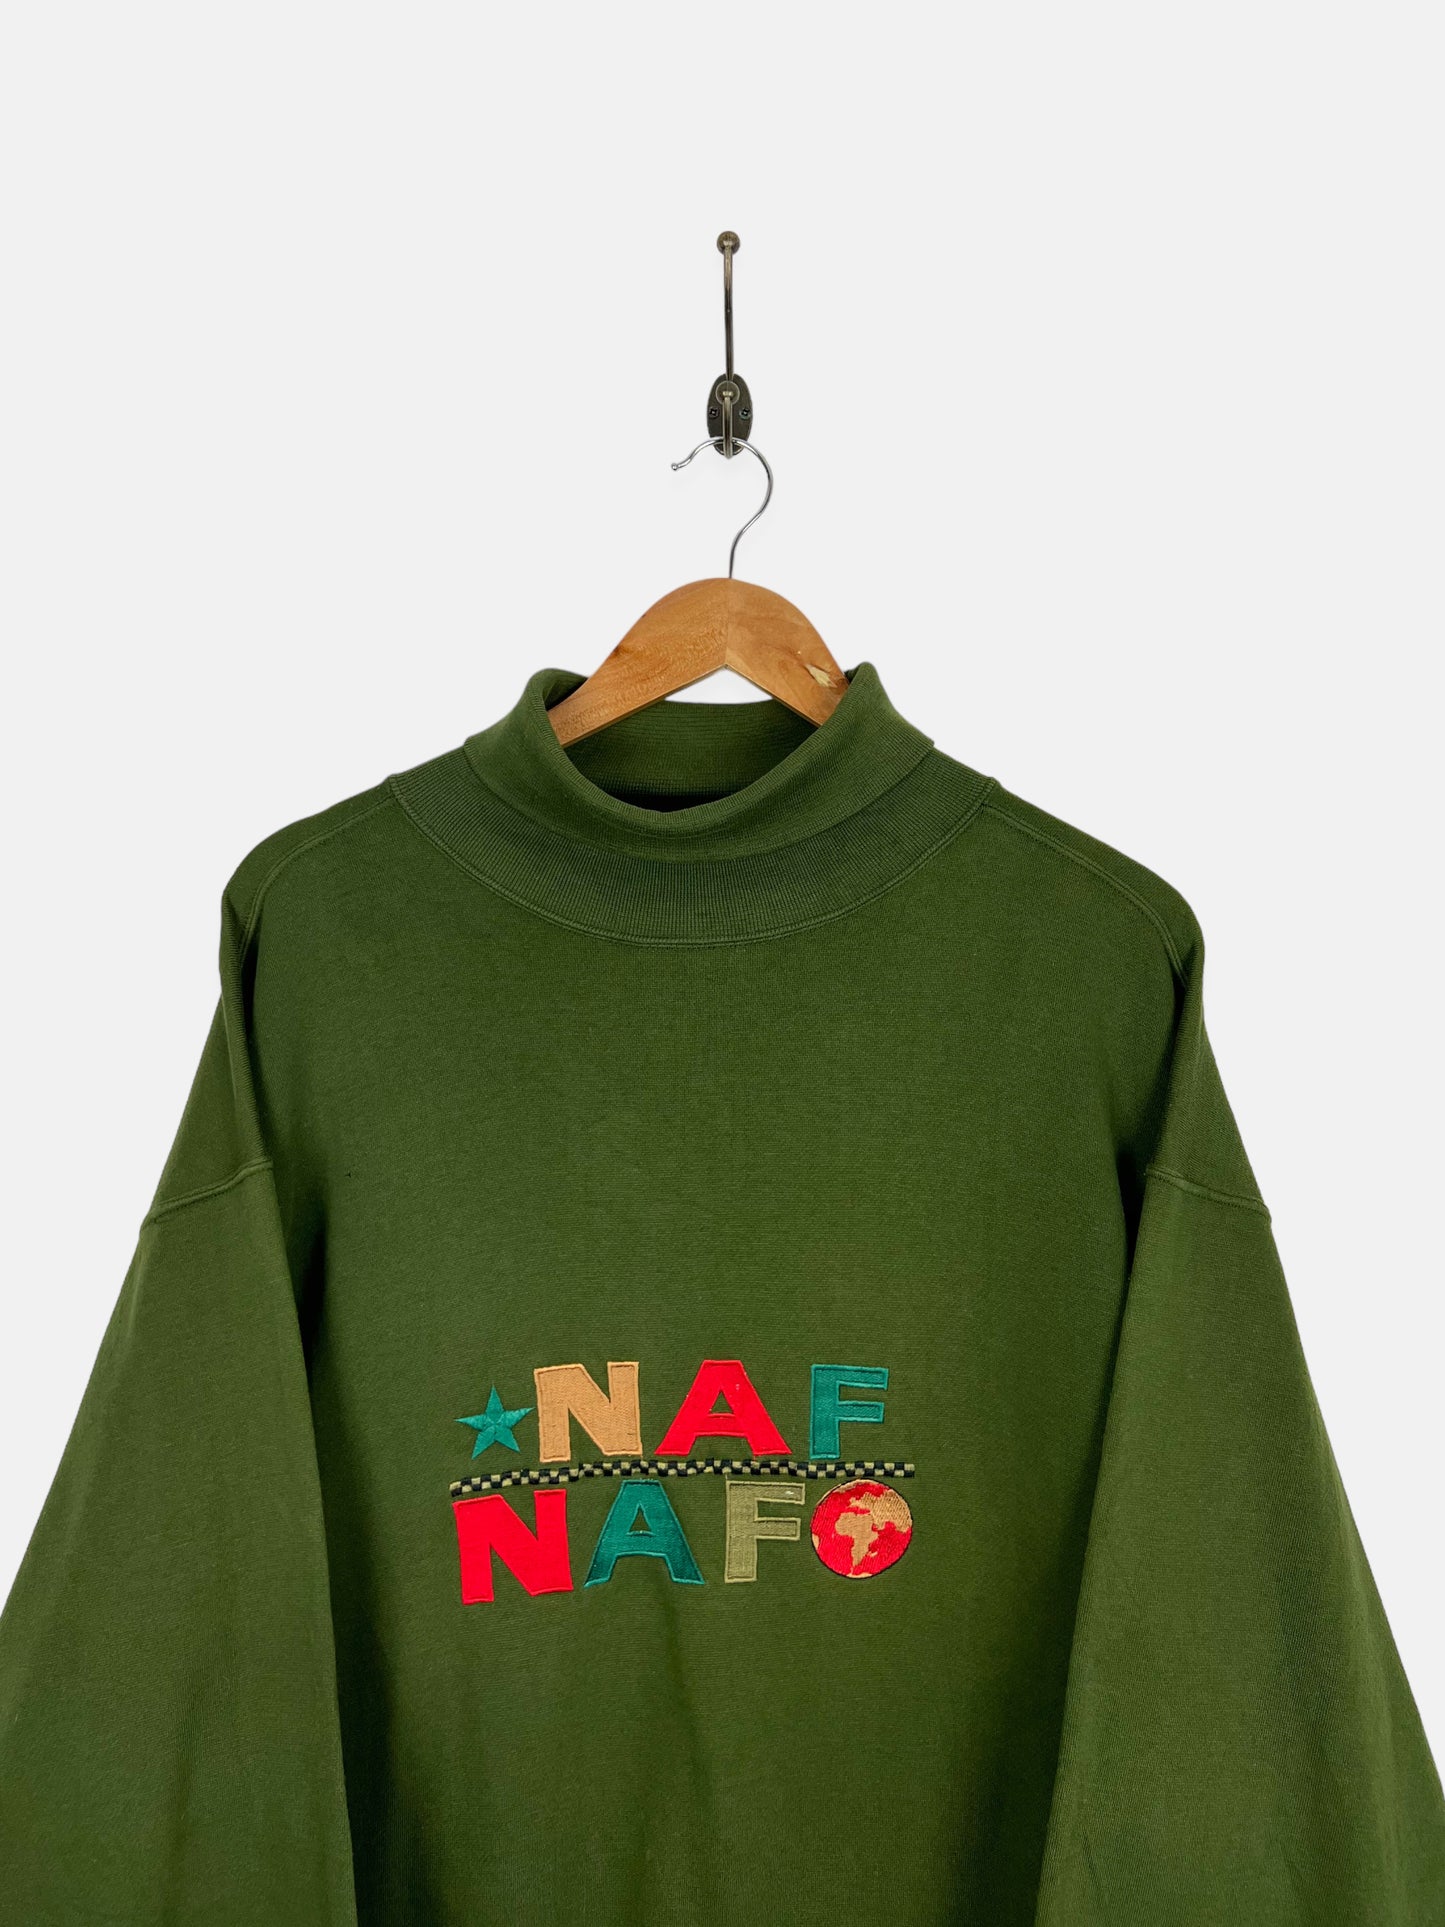 90's Naf Naf Embroidered Vintage Turtle-Neck Sweatshirt Size M-L